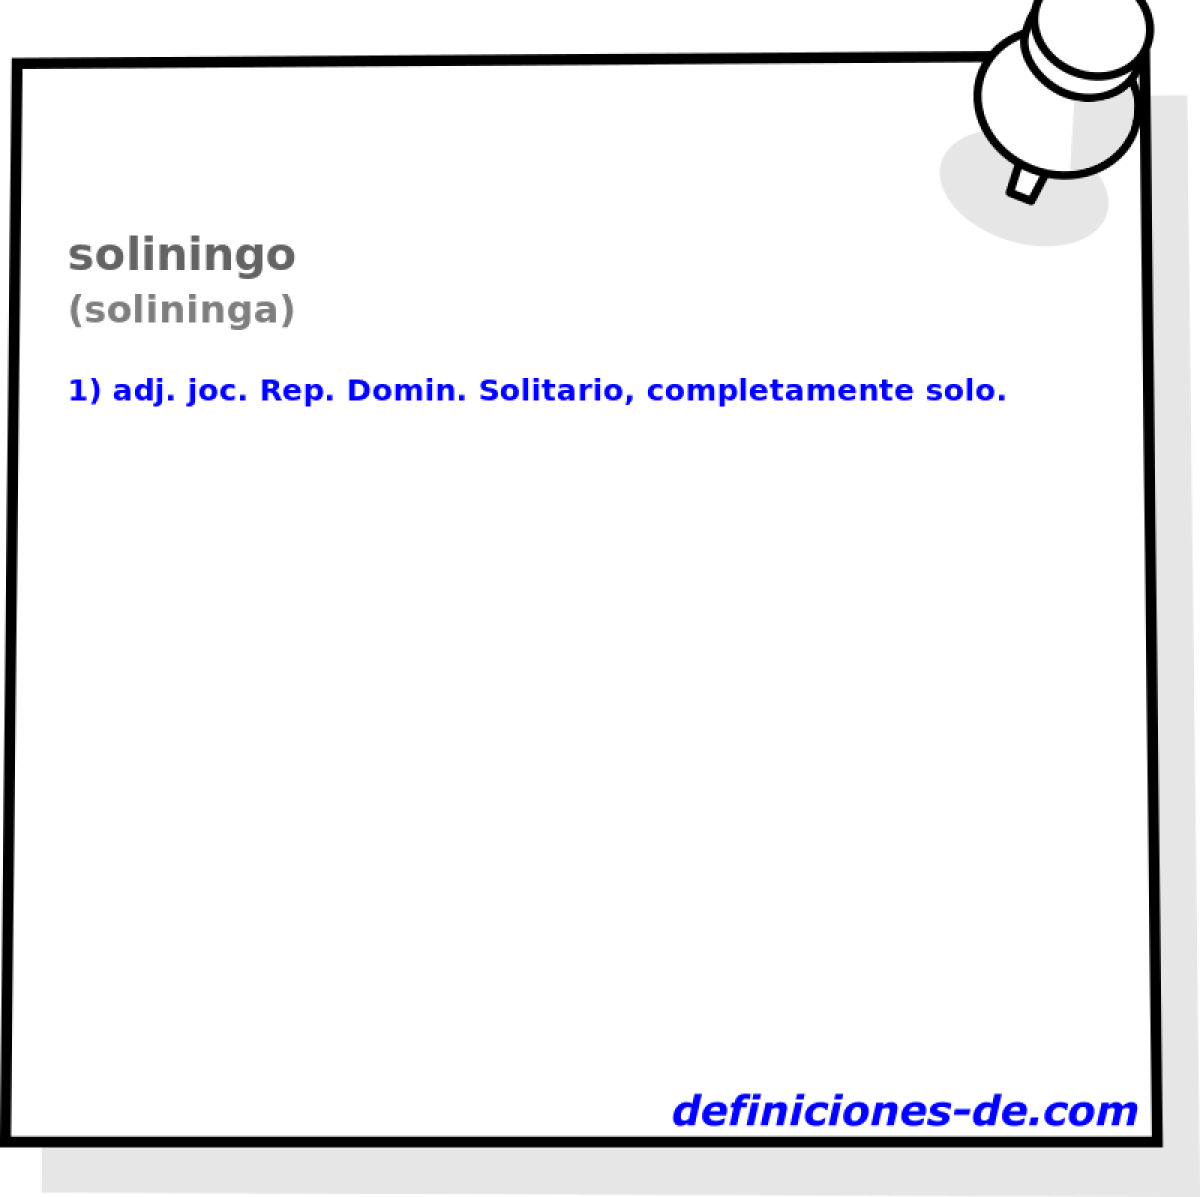 soliningo (solininga)